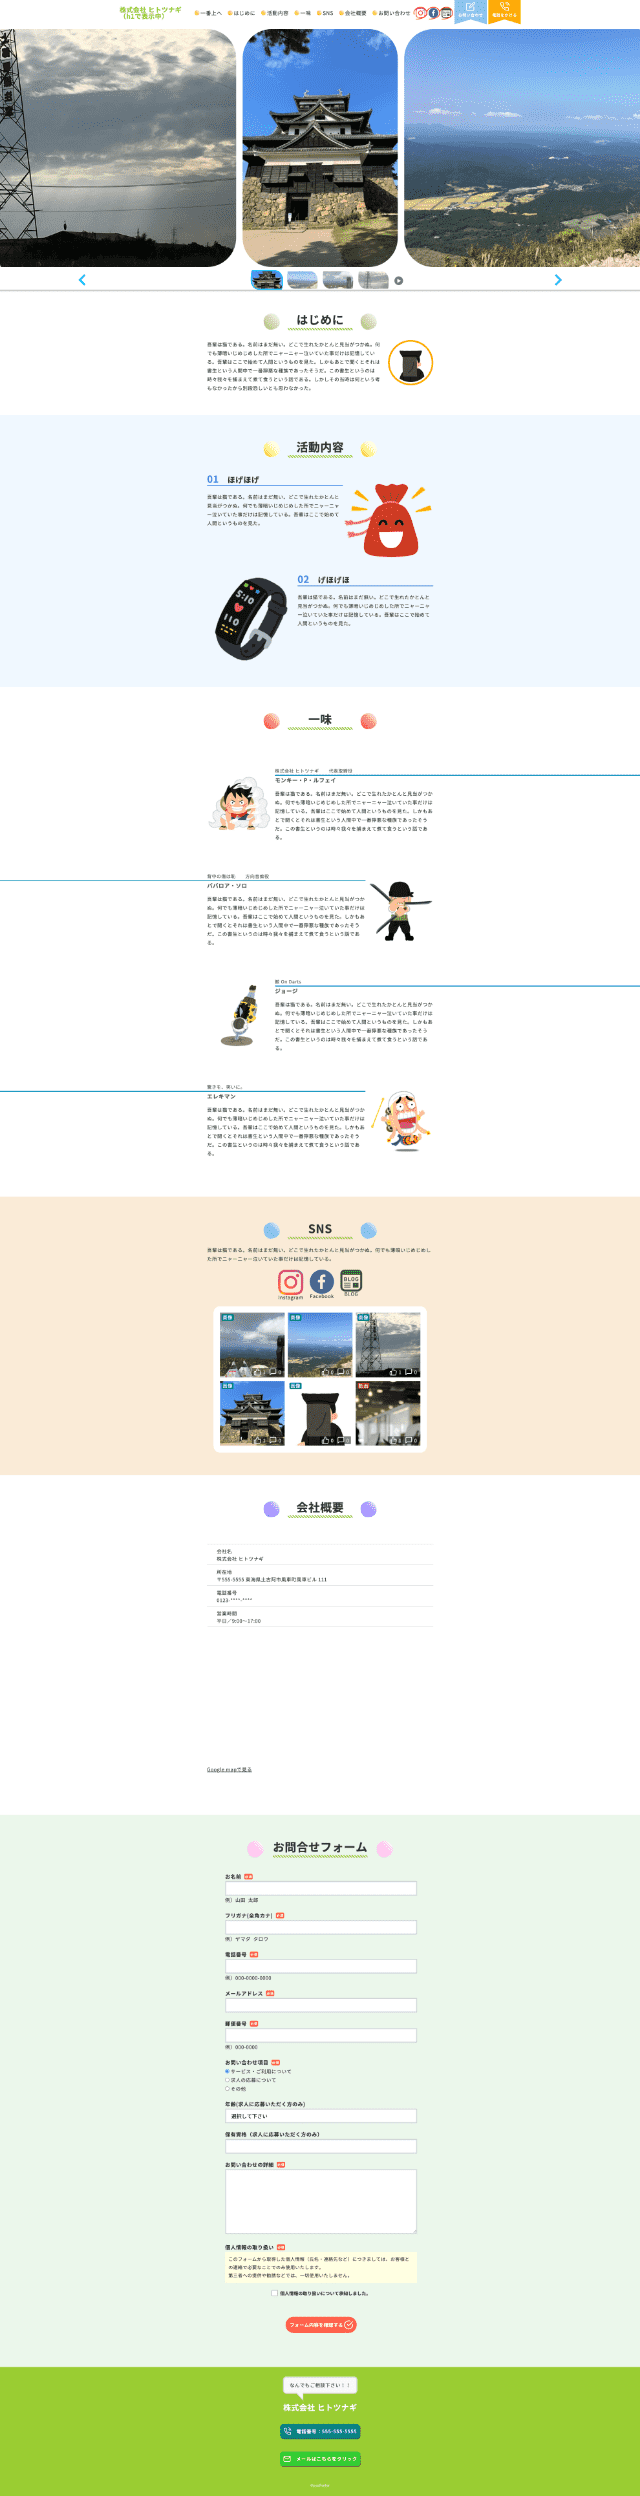 Webサイト、株式会社ヒトツナギのパソコントップページ画像